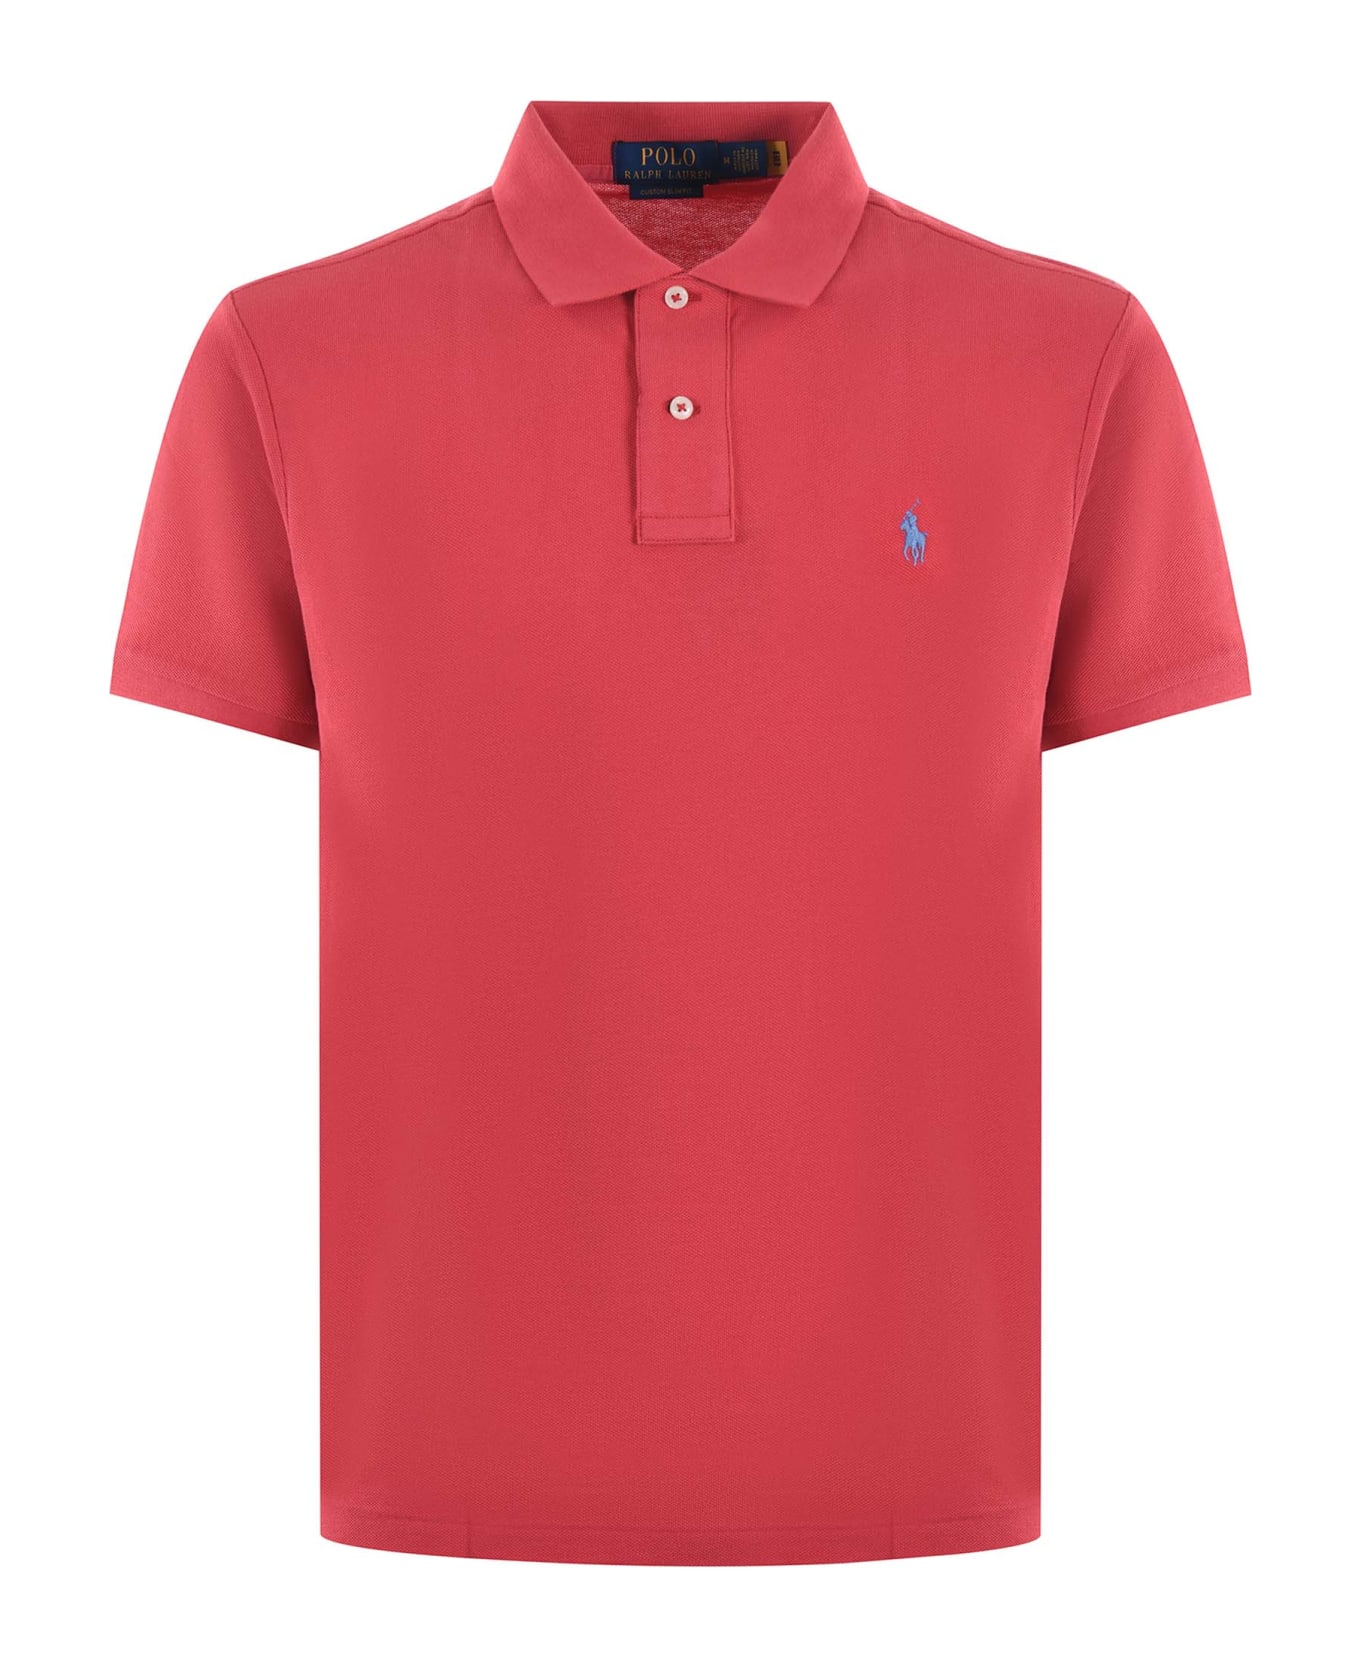 Polo Ralph Lauren "polo Ralph Lauren" Polo Shirt - Rosso corallo